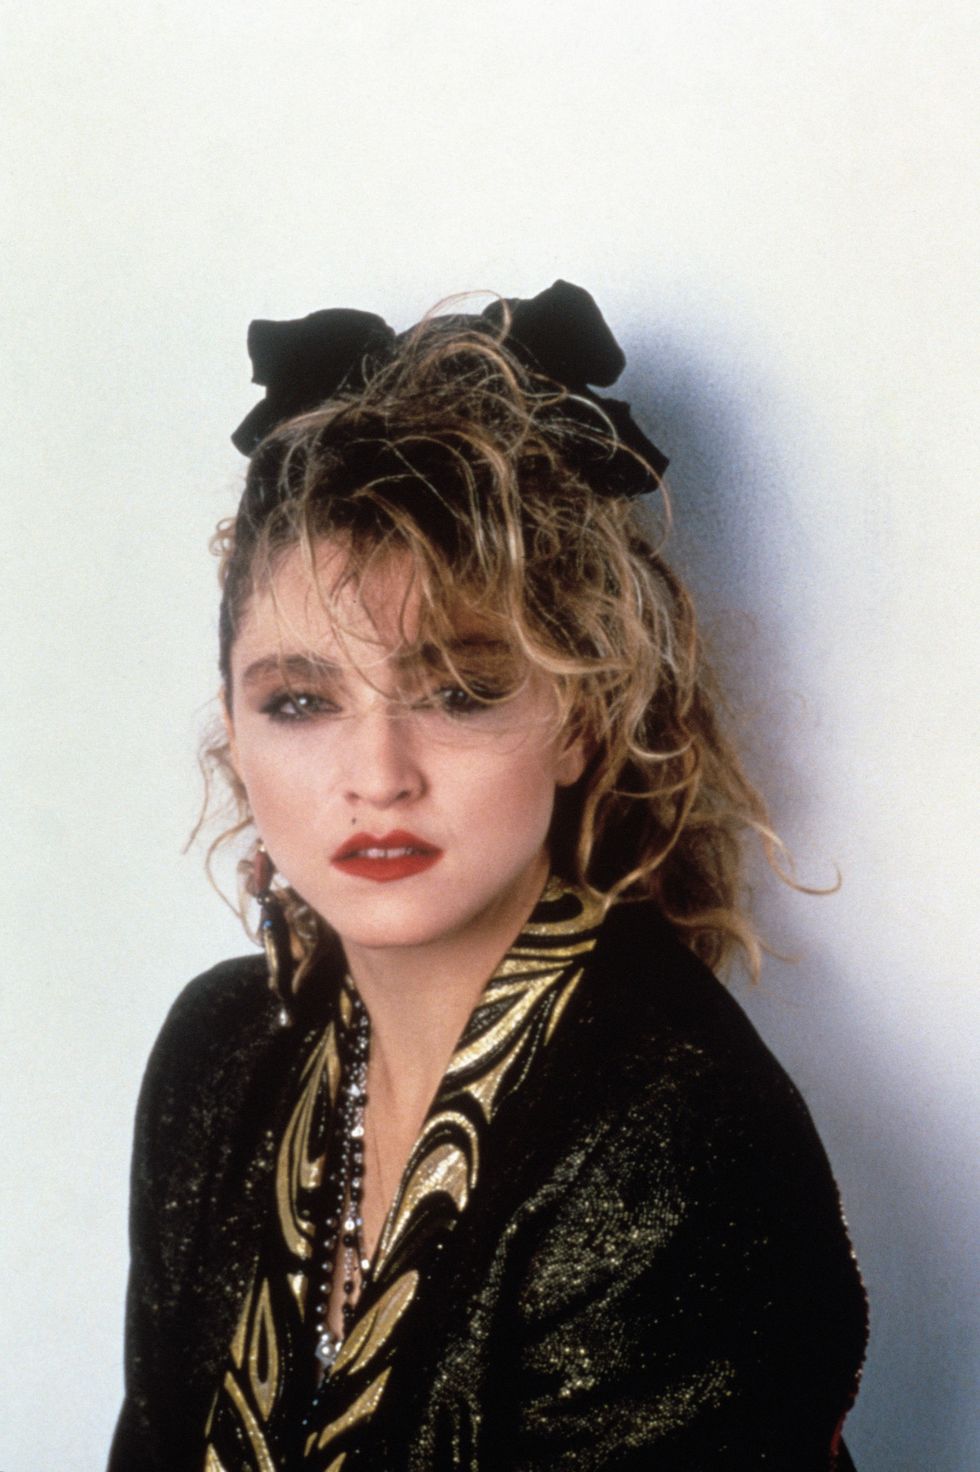 1 - Popstar shag, il taglio revival scalto e vaporoso che si ispira a Madonna